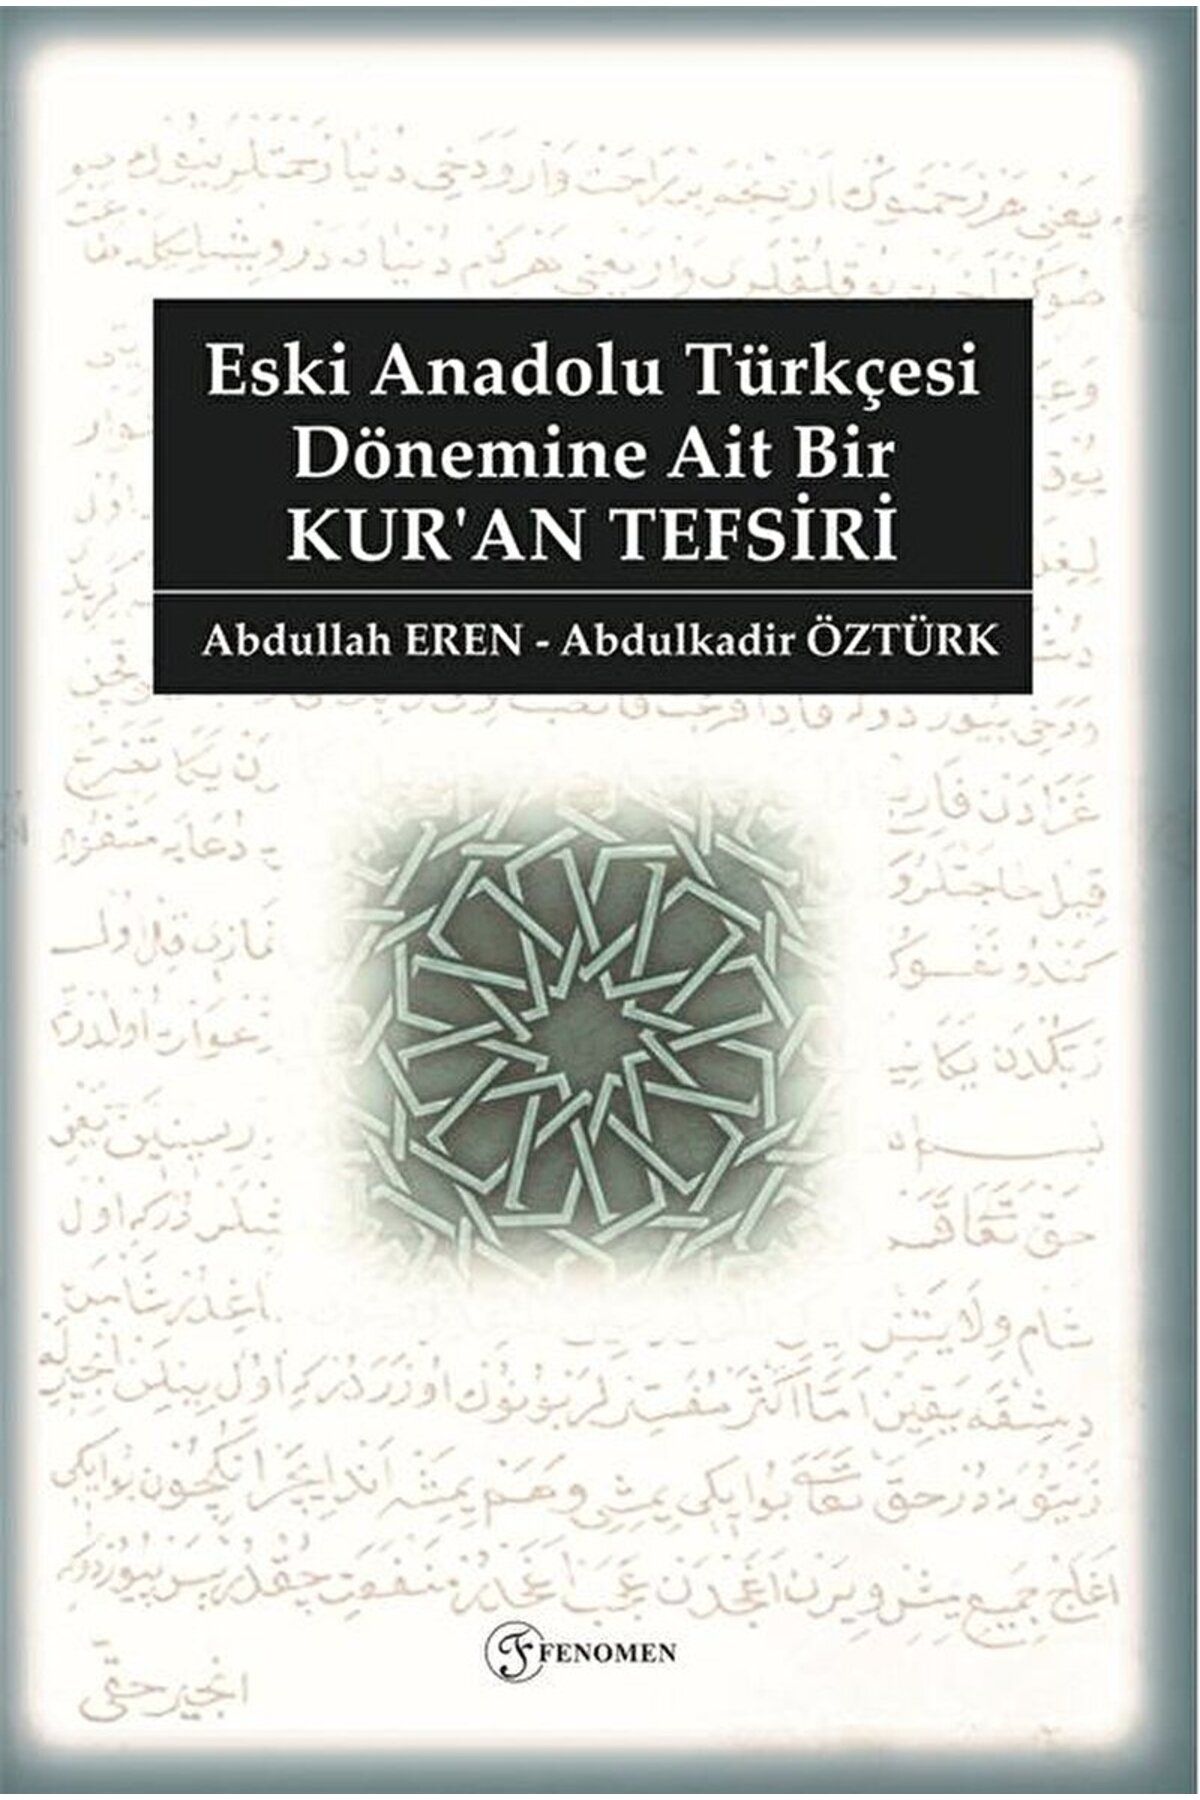 Fenomen Yayıncılık Eski Anadolu Türkçesi / Kazım Köktekin / Fenomen Yayıncılık / 9786056008269